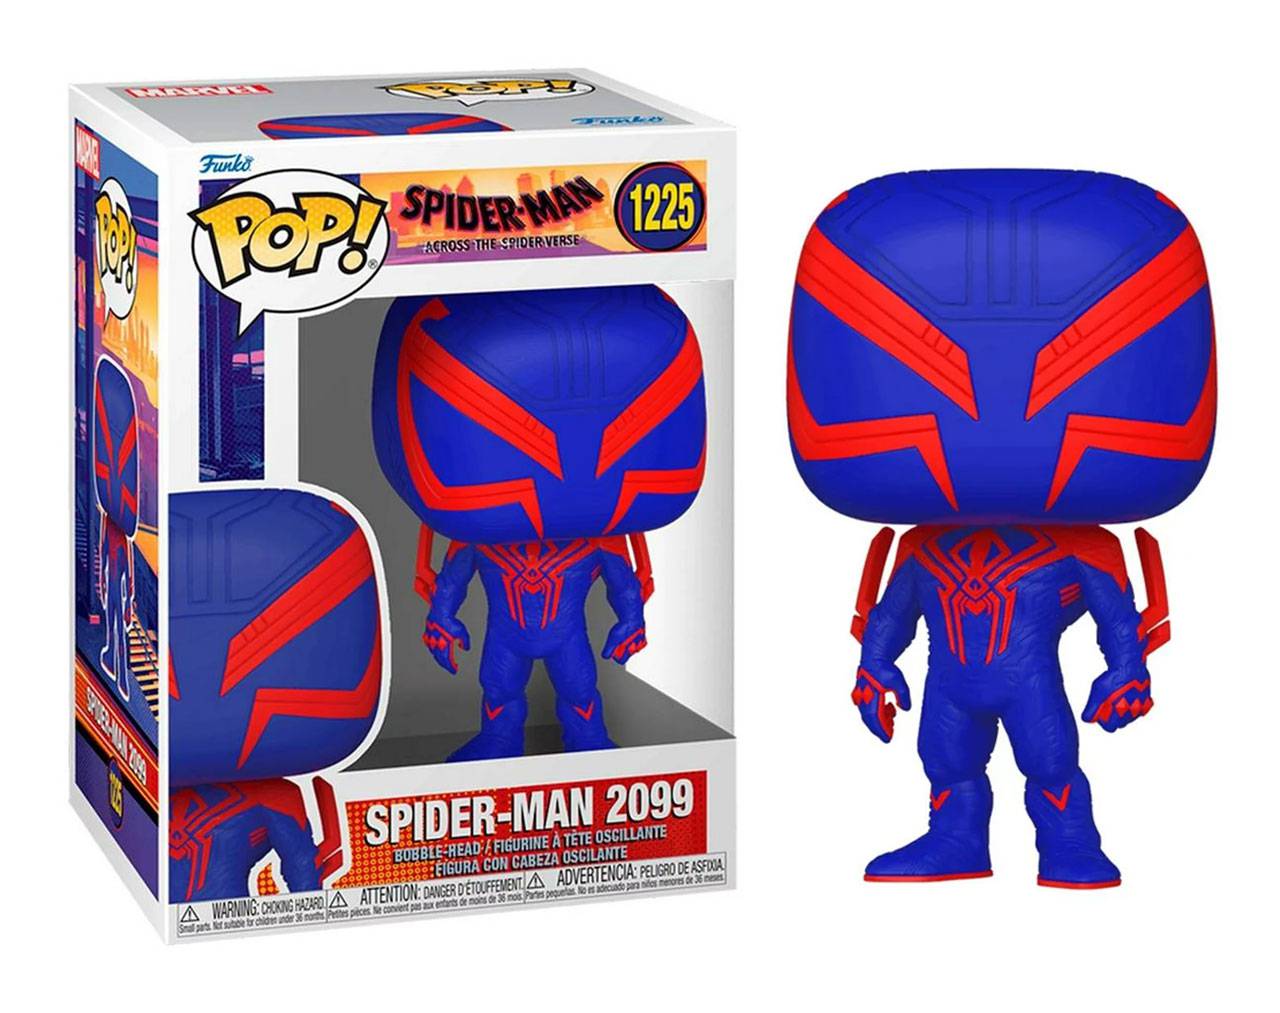 Spider-Man 2099 - Spider-Man Across the Spider-verse Pop! Vinyl